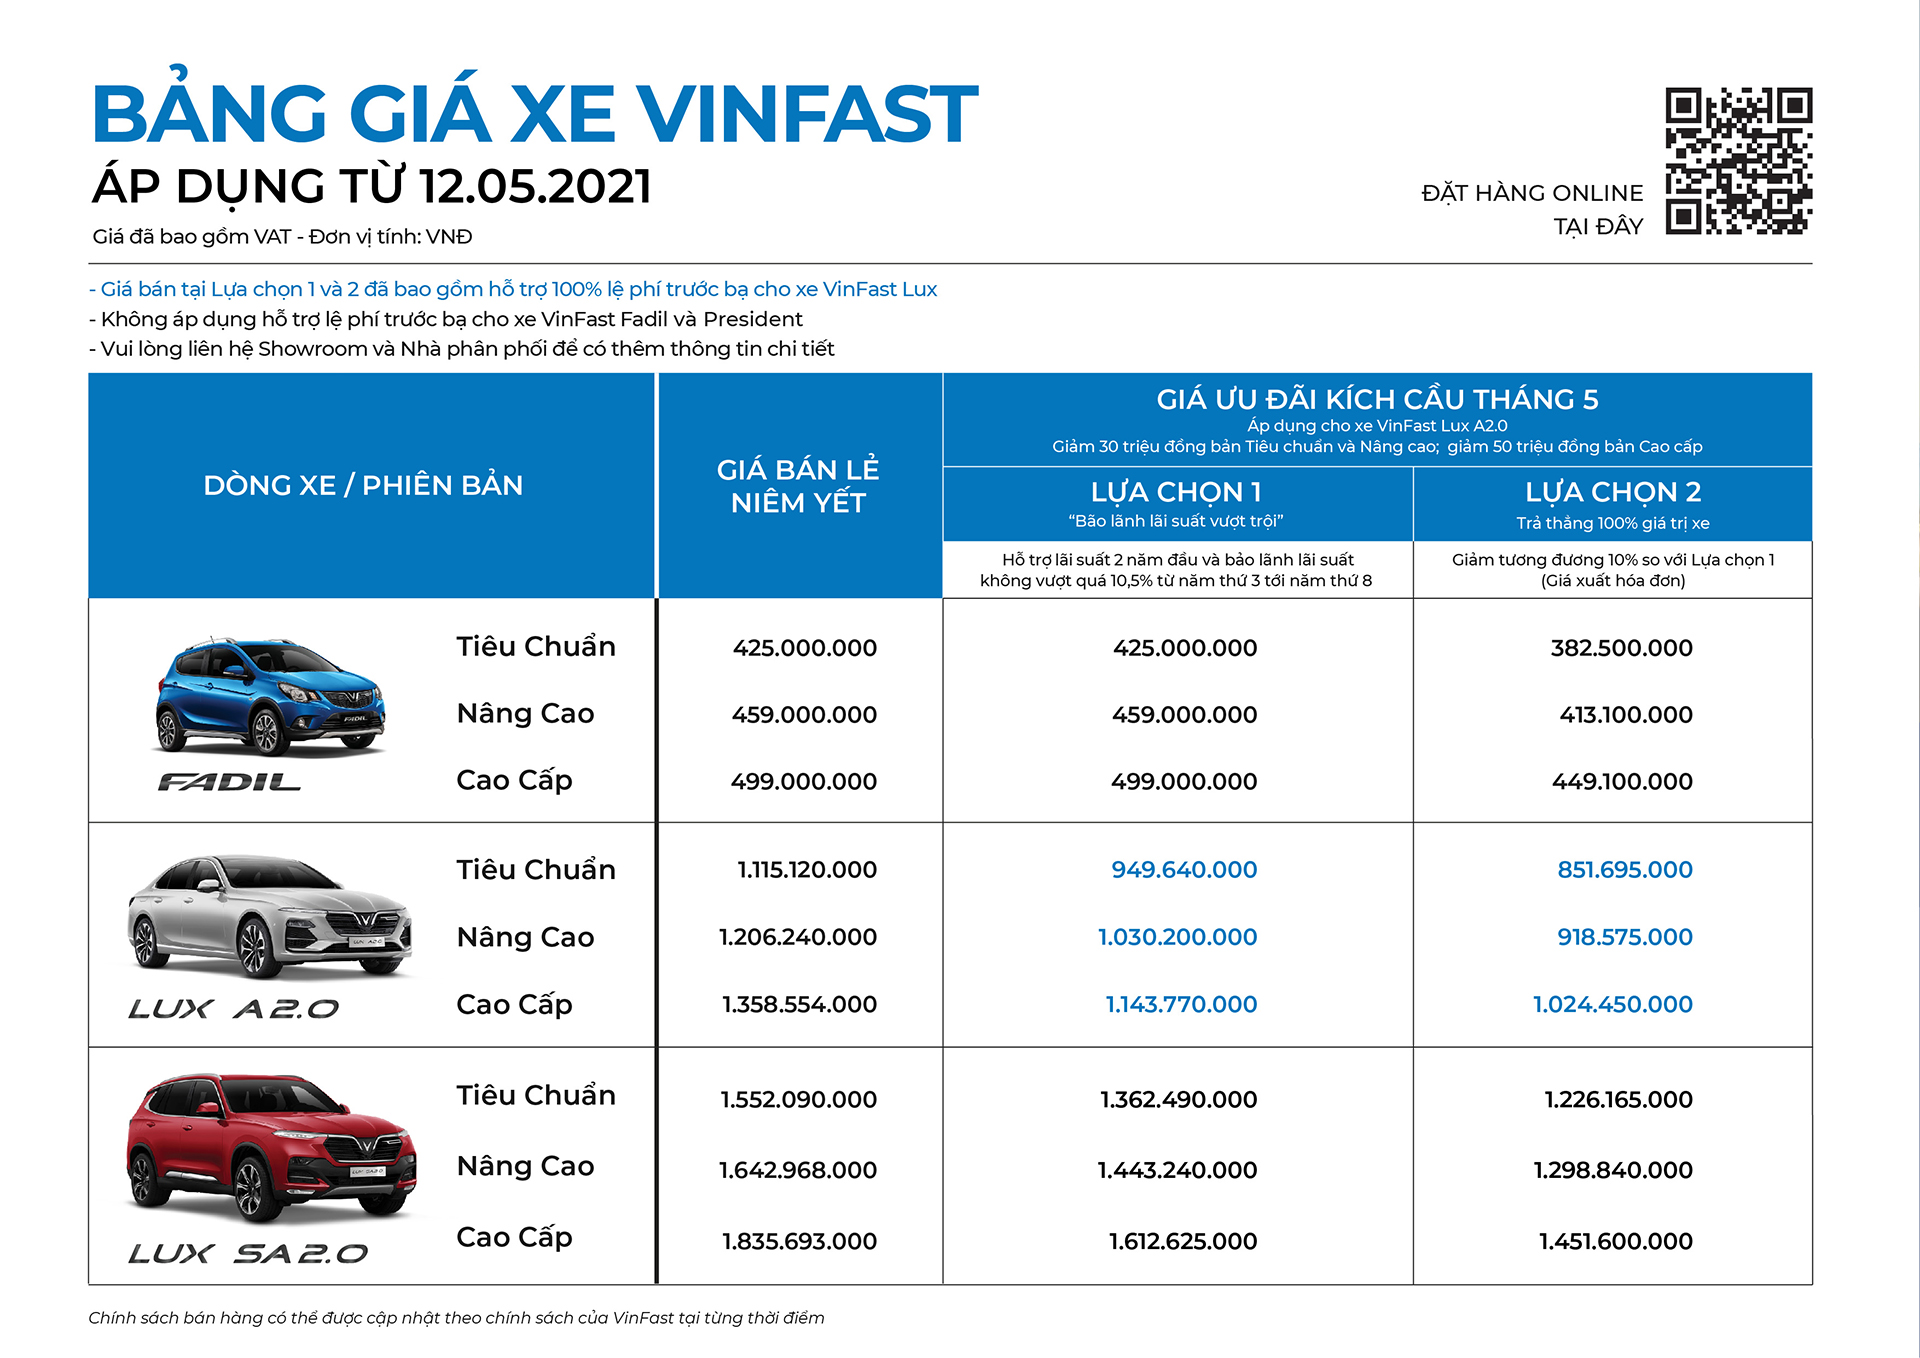 VinFast kích cầu tháng 5: Cơ hội đặc biệt để sở hữu Lux A2.0 chỉ từ 851 triệu đồng